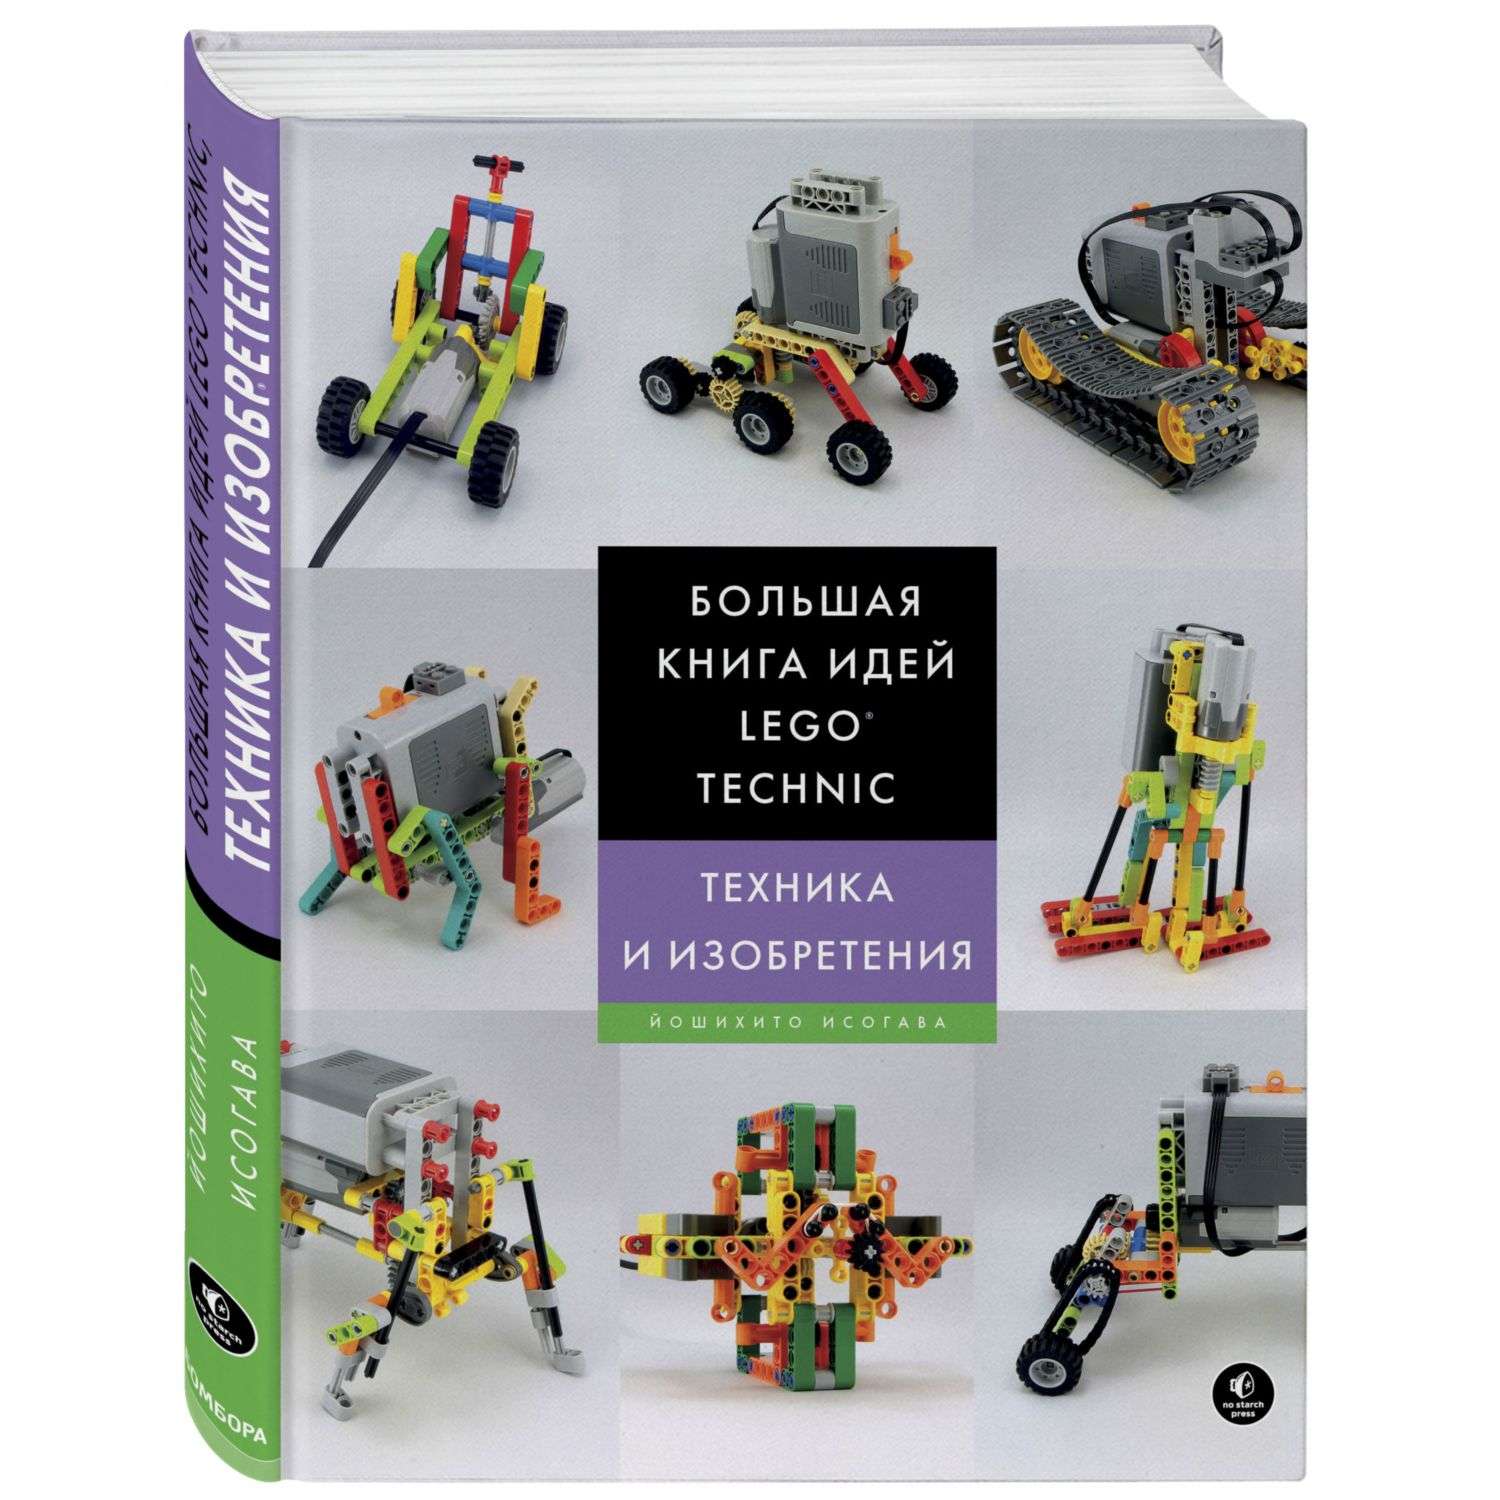 Книга Эксмо Большая книга идей LEGO Technic Техника и изобретения - фото 1